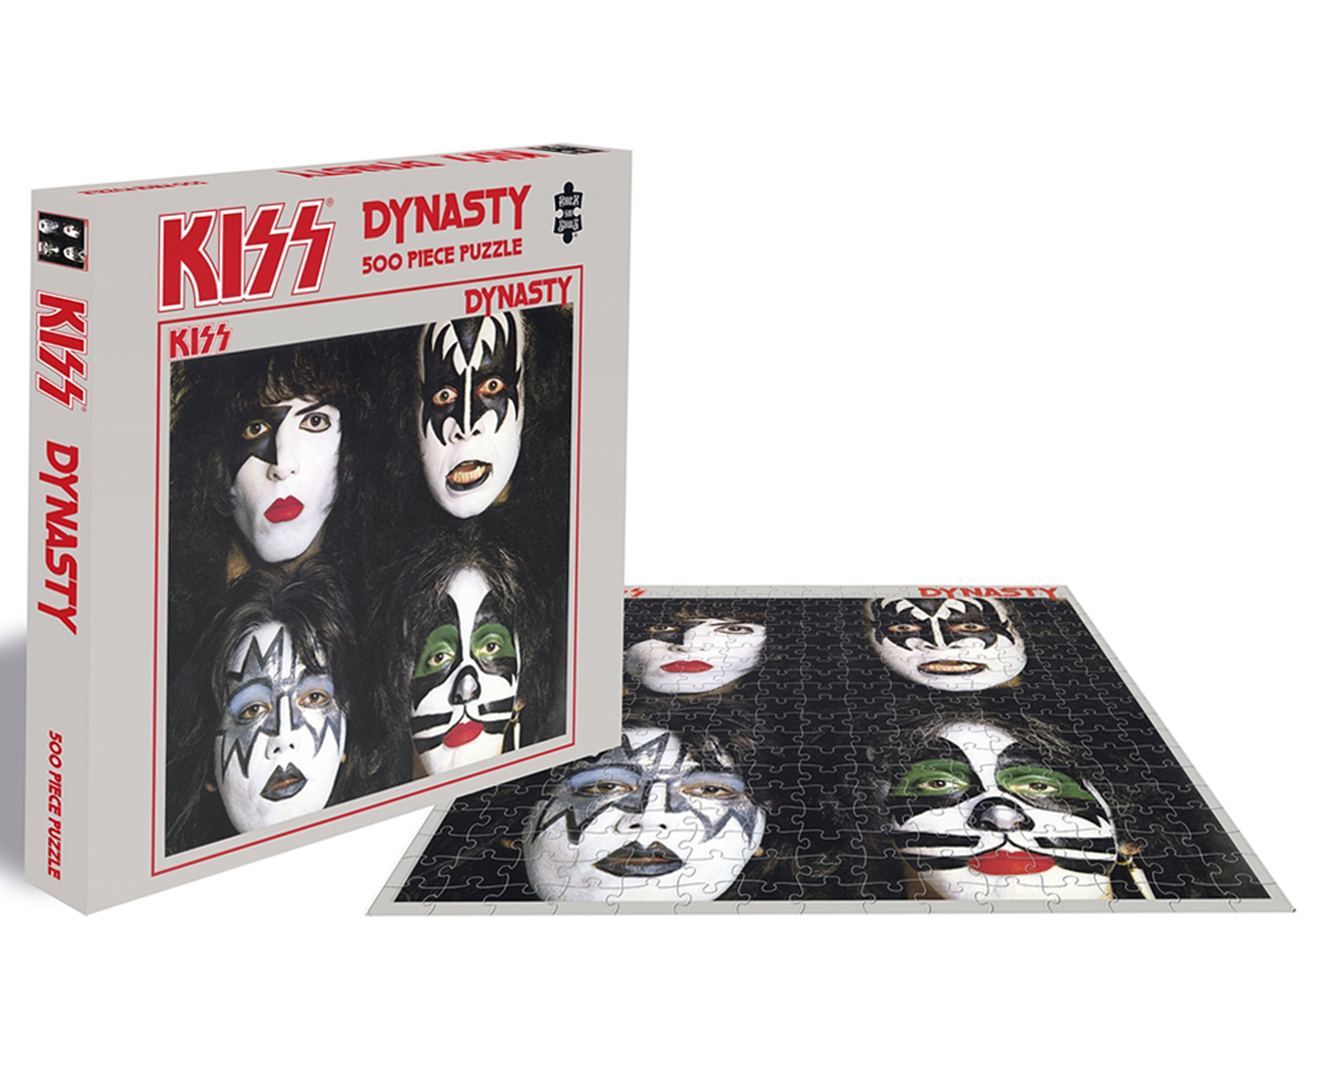 KISS Dynasty 500pc Jigsaw Puzzle | Catch.com.au